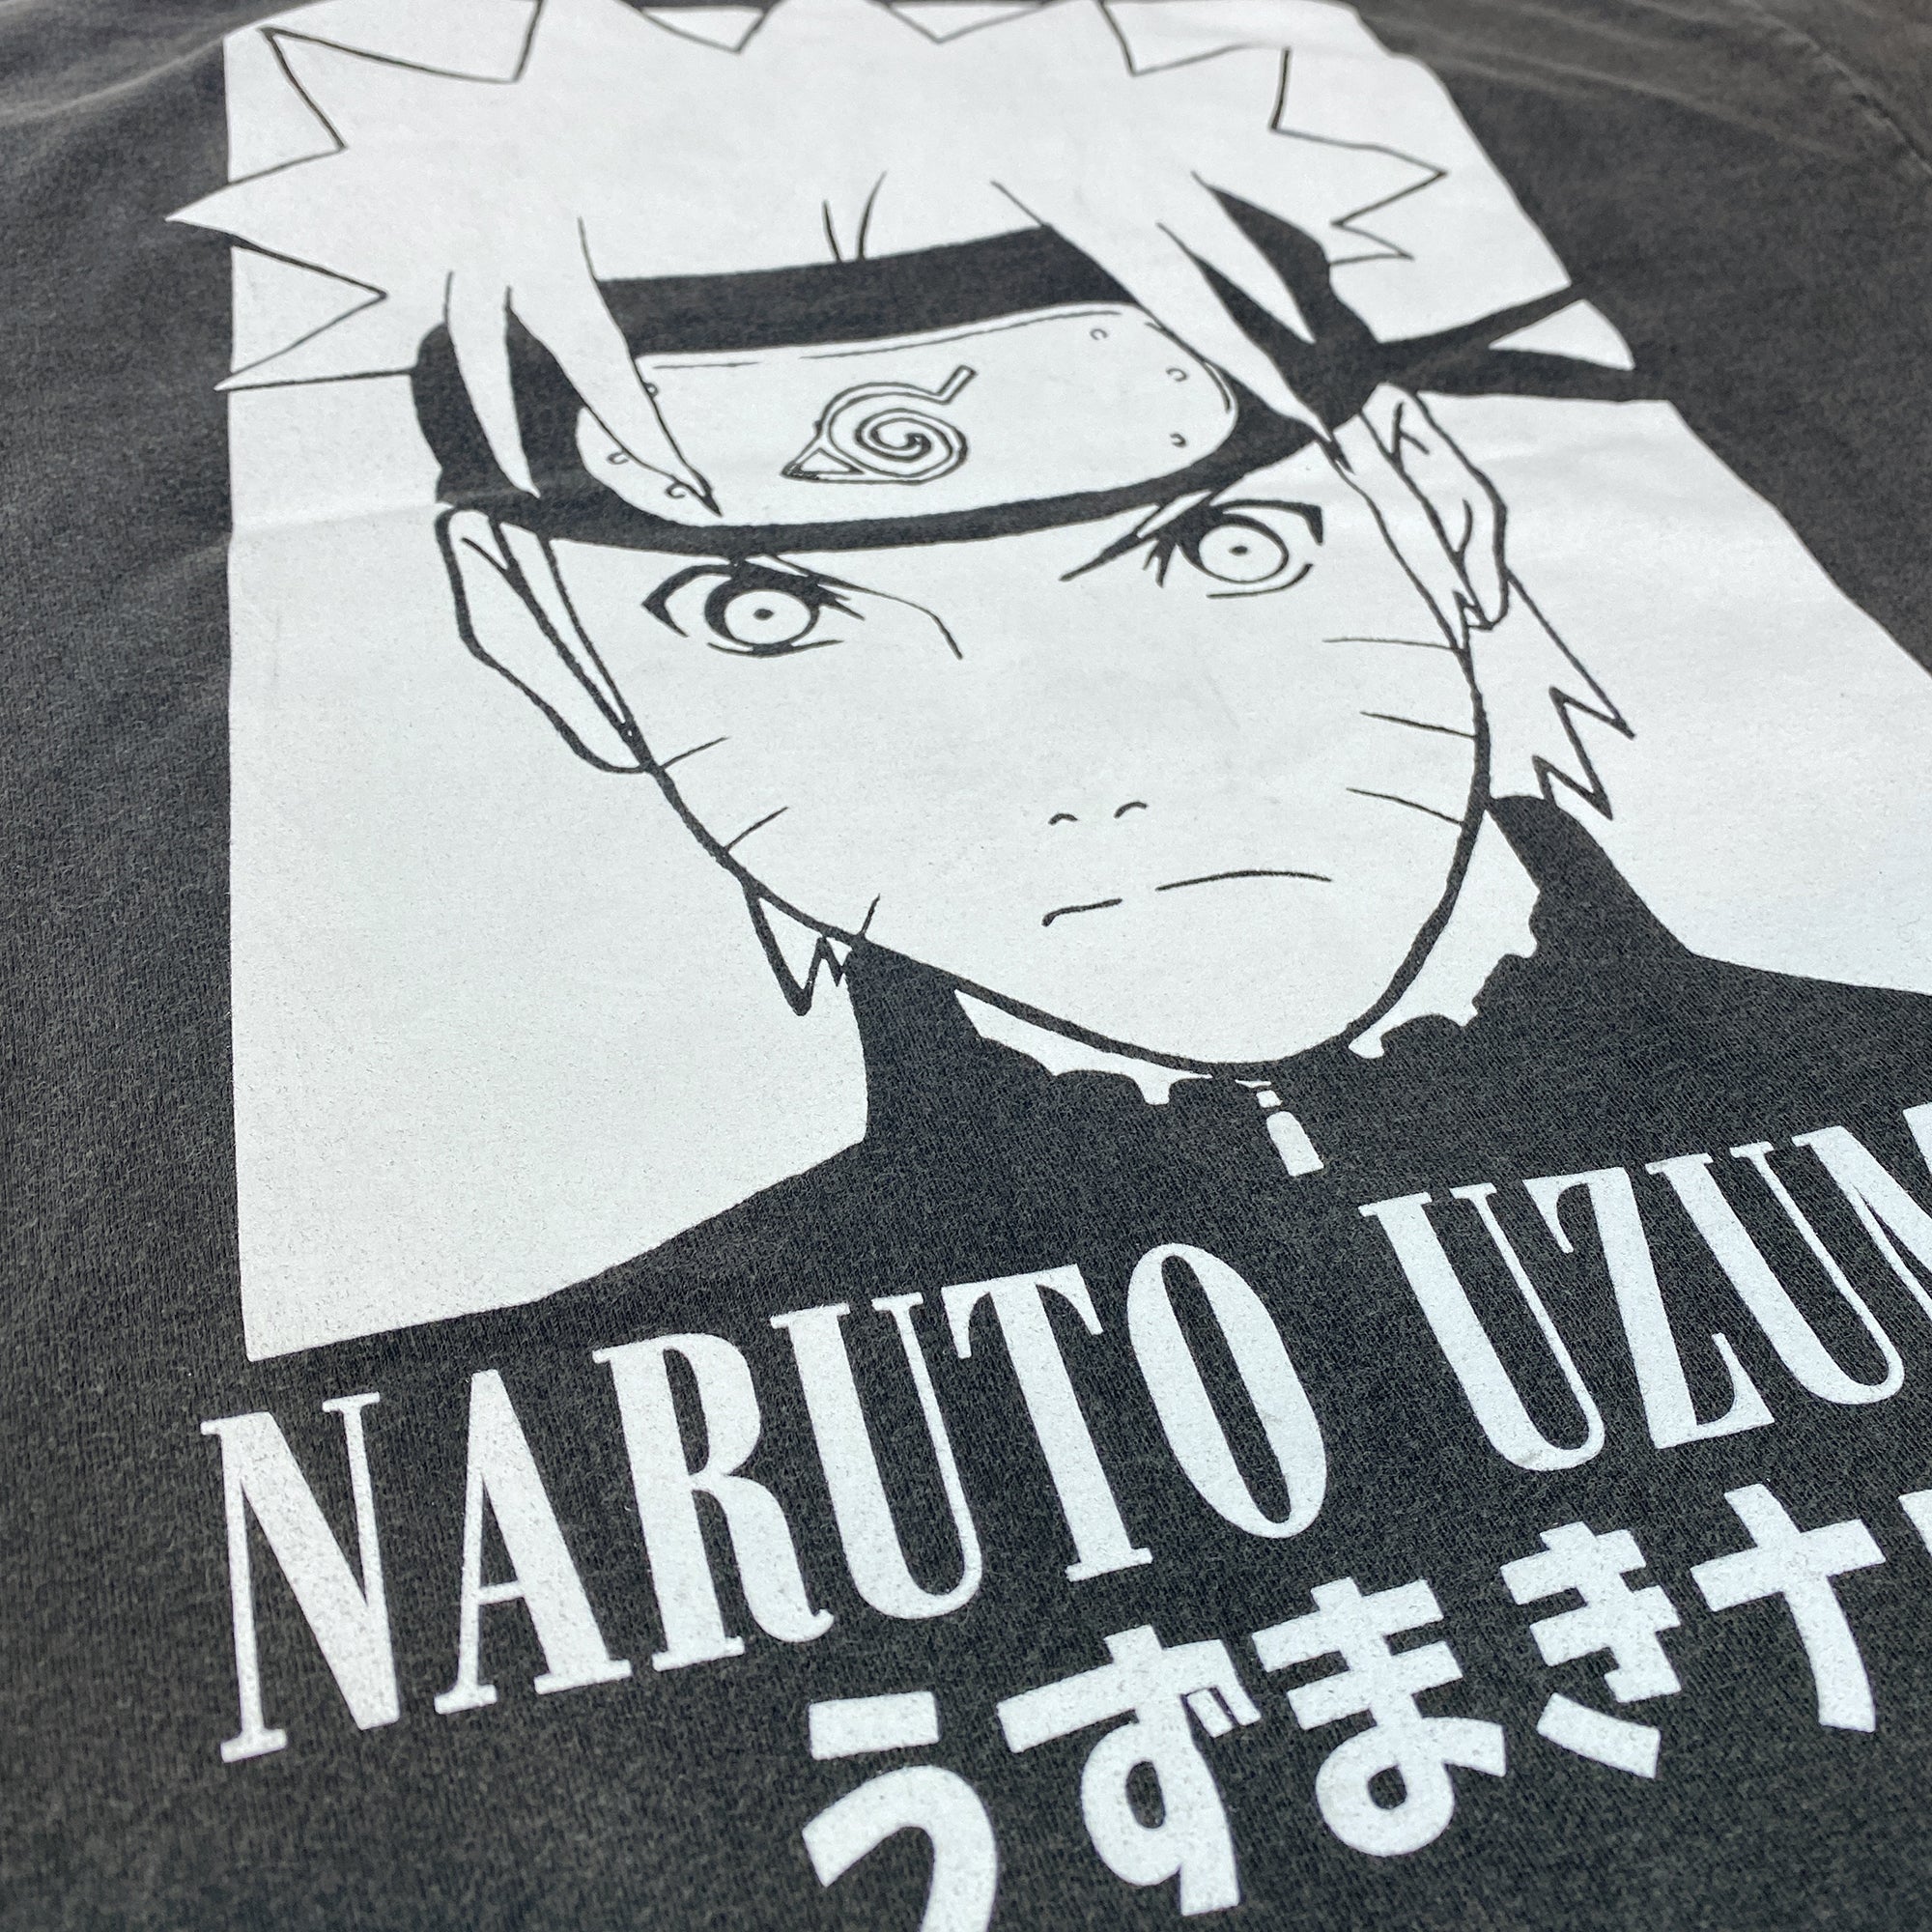 Naruto Shippuden on Crunchyroll!  Naruto shippuden characters, Anime naruto,  Naruto shippuden anime